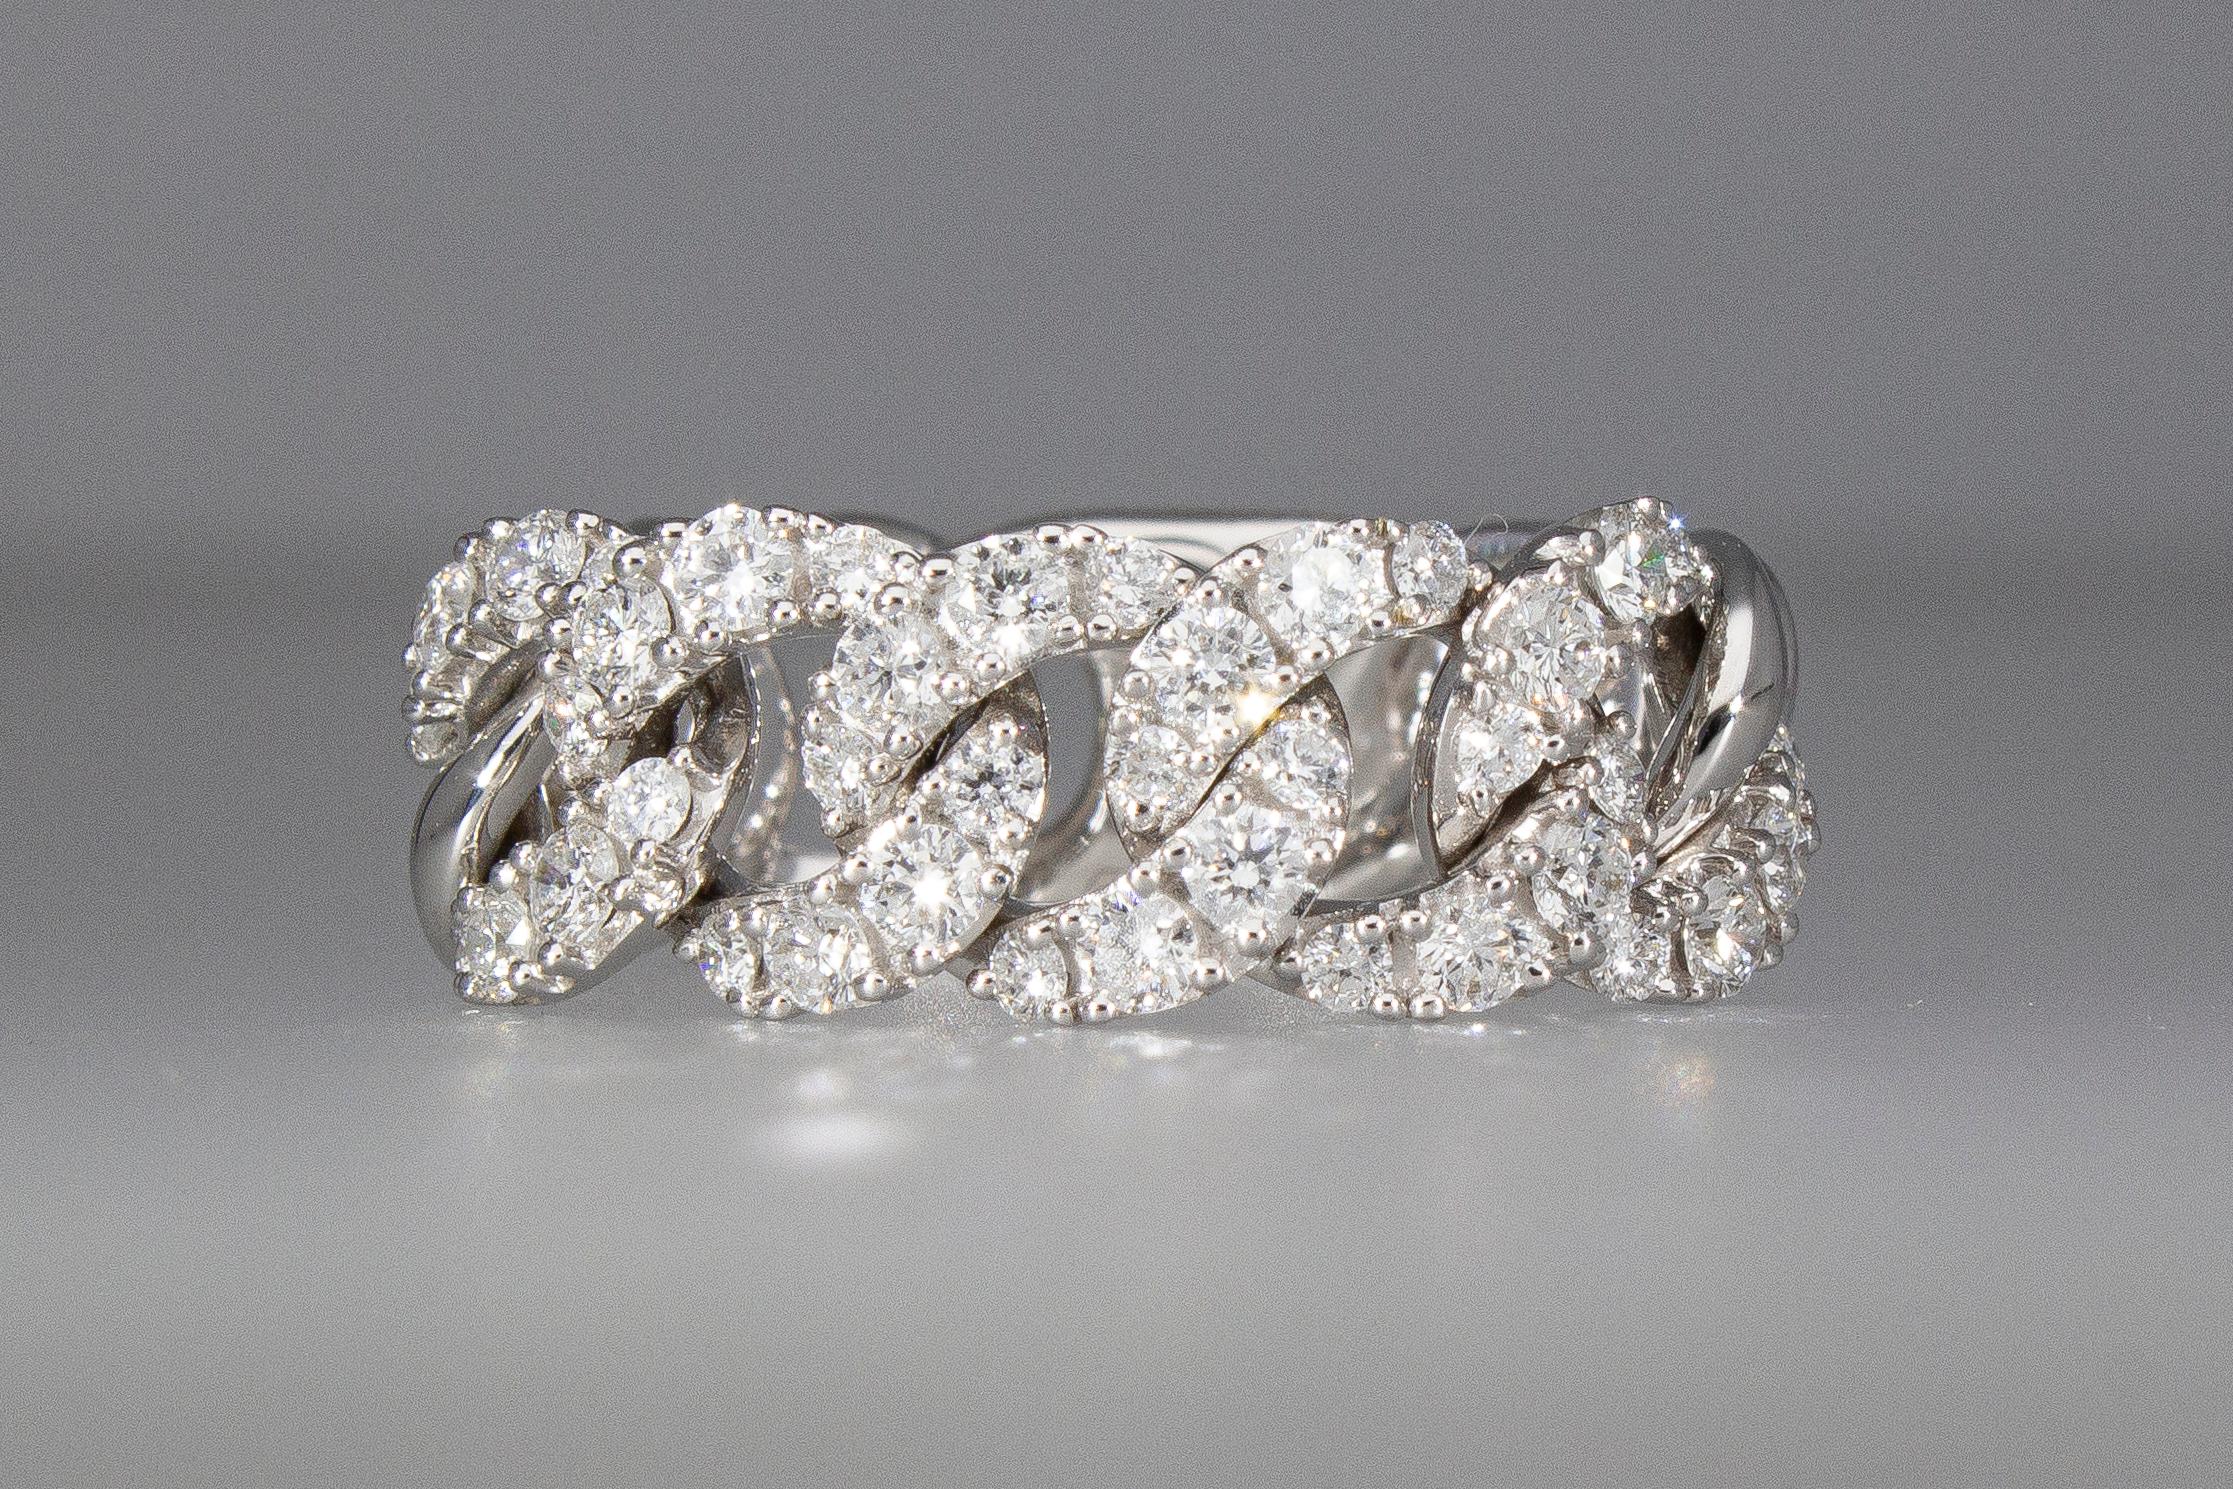 Ring Modell Groumette mit 40 Diamanten im Brillantschliff, gefasst auf 5 Gliedern, mit einem Gesamtgewicht von 0,90 ct.
Der Ring hat weiche Glieder, 5 mit Diamanten und 6 ohne Diamanten, plus 1 Glied, um eine mögliche Größenänderung zu